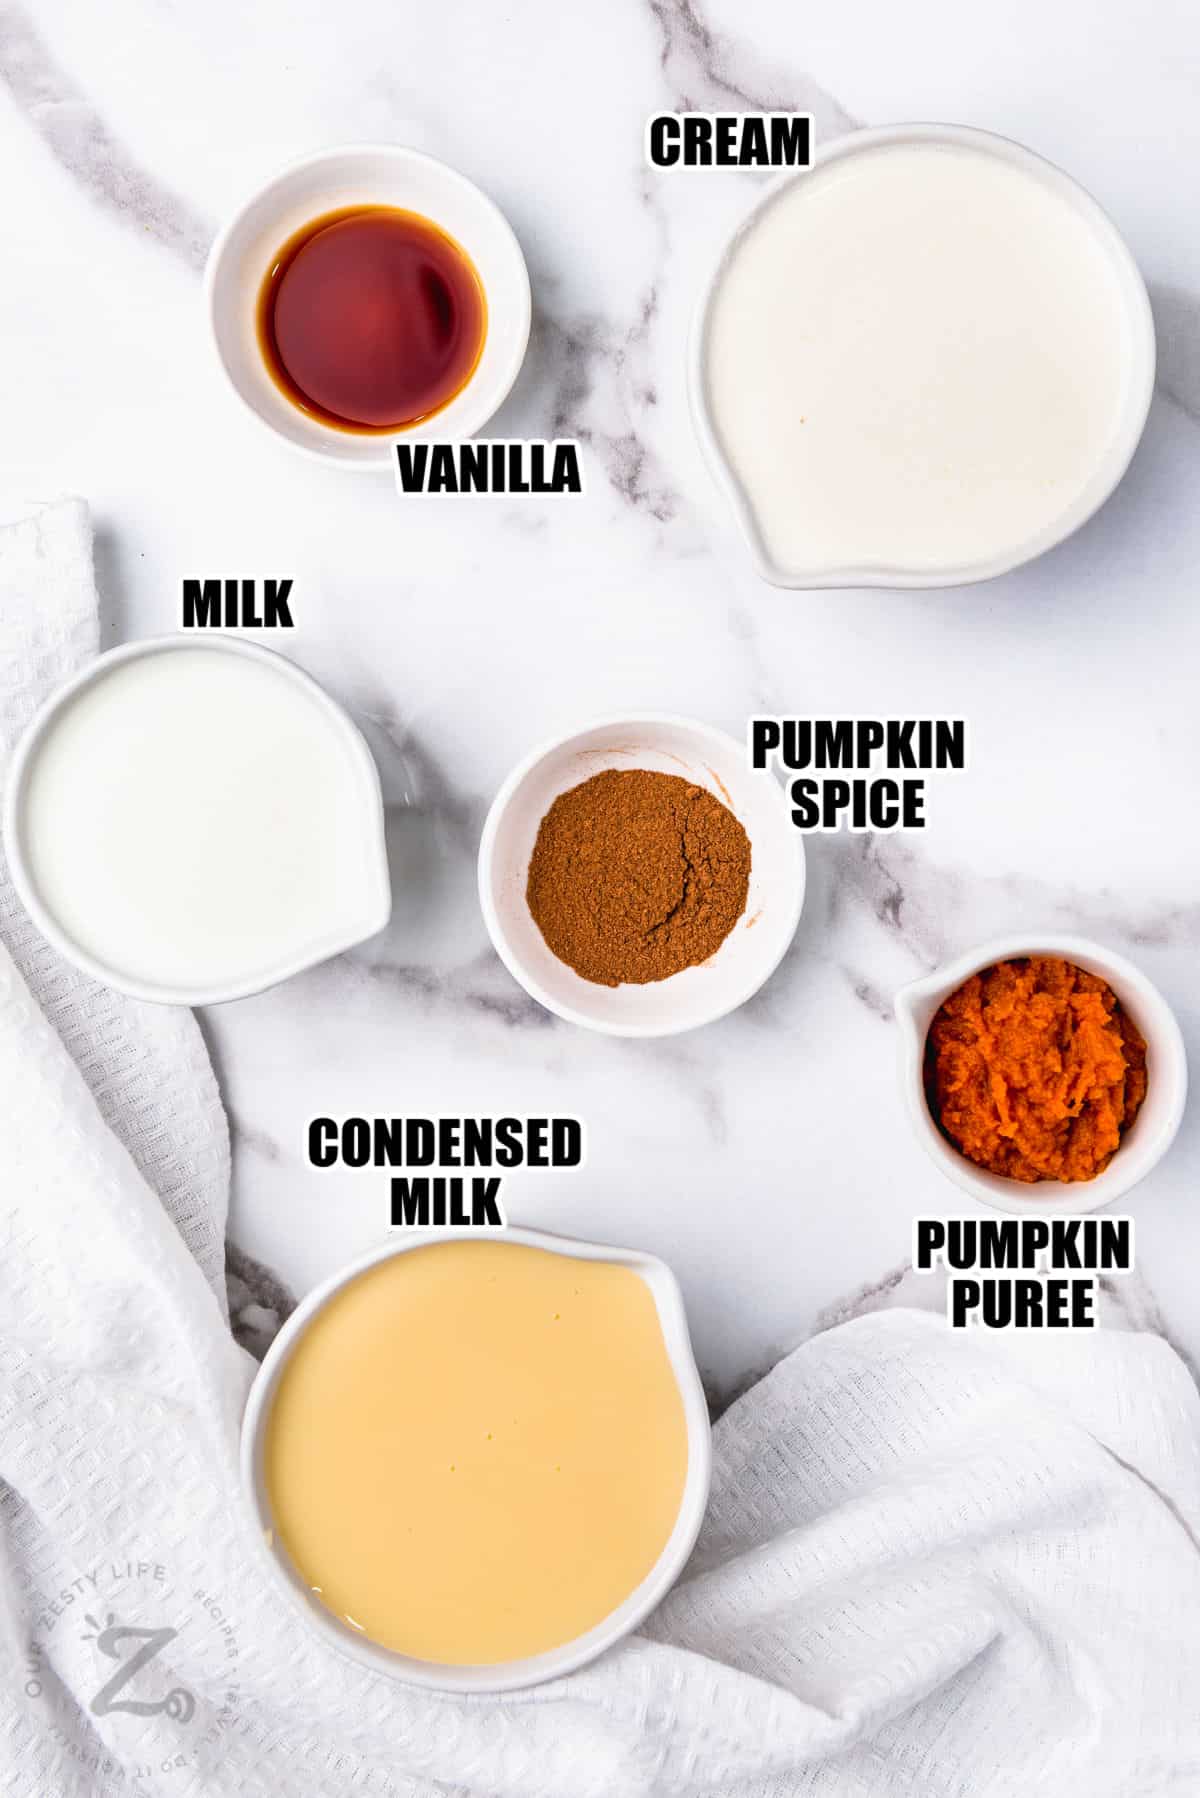 cream , vanilla , milk , pumpkin spice , pumpkin puree and condensed milk with labels to make Pumpkin Spice Creamer